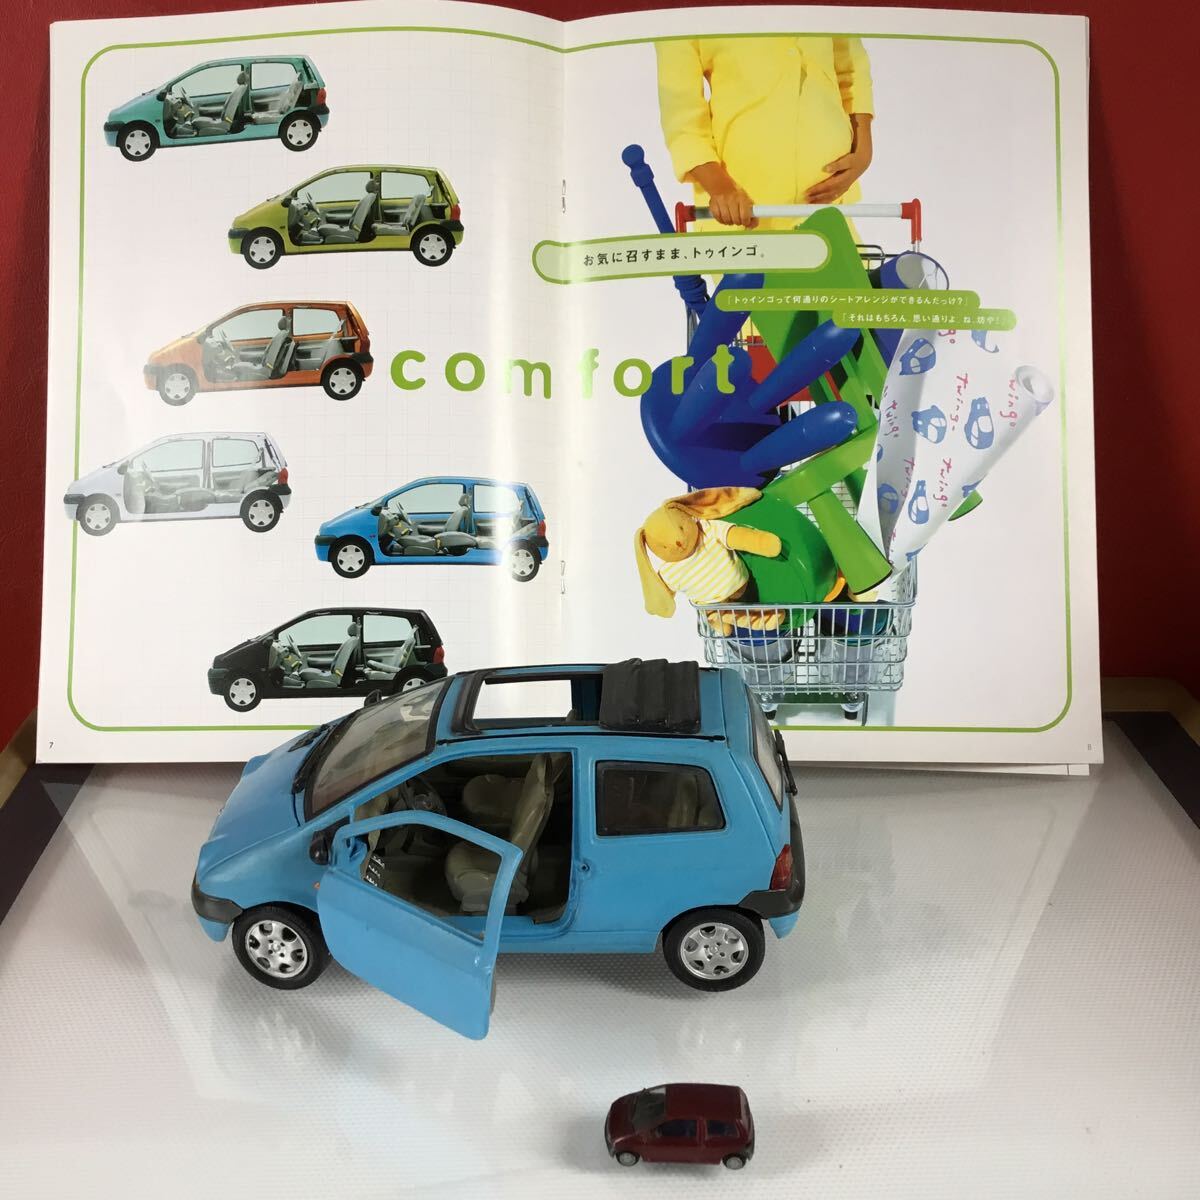  Renault Twingo миникар ×3 шт., роскошный каталог 